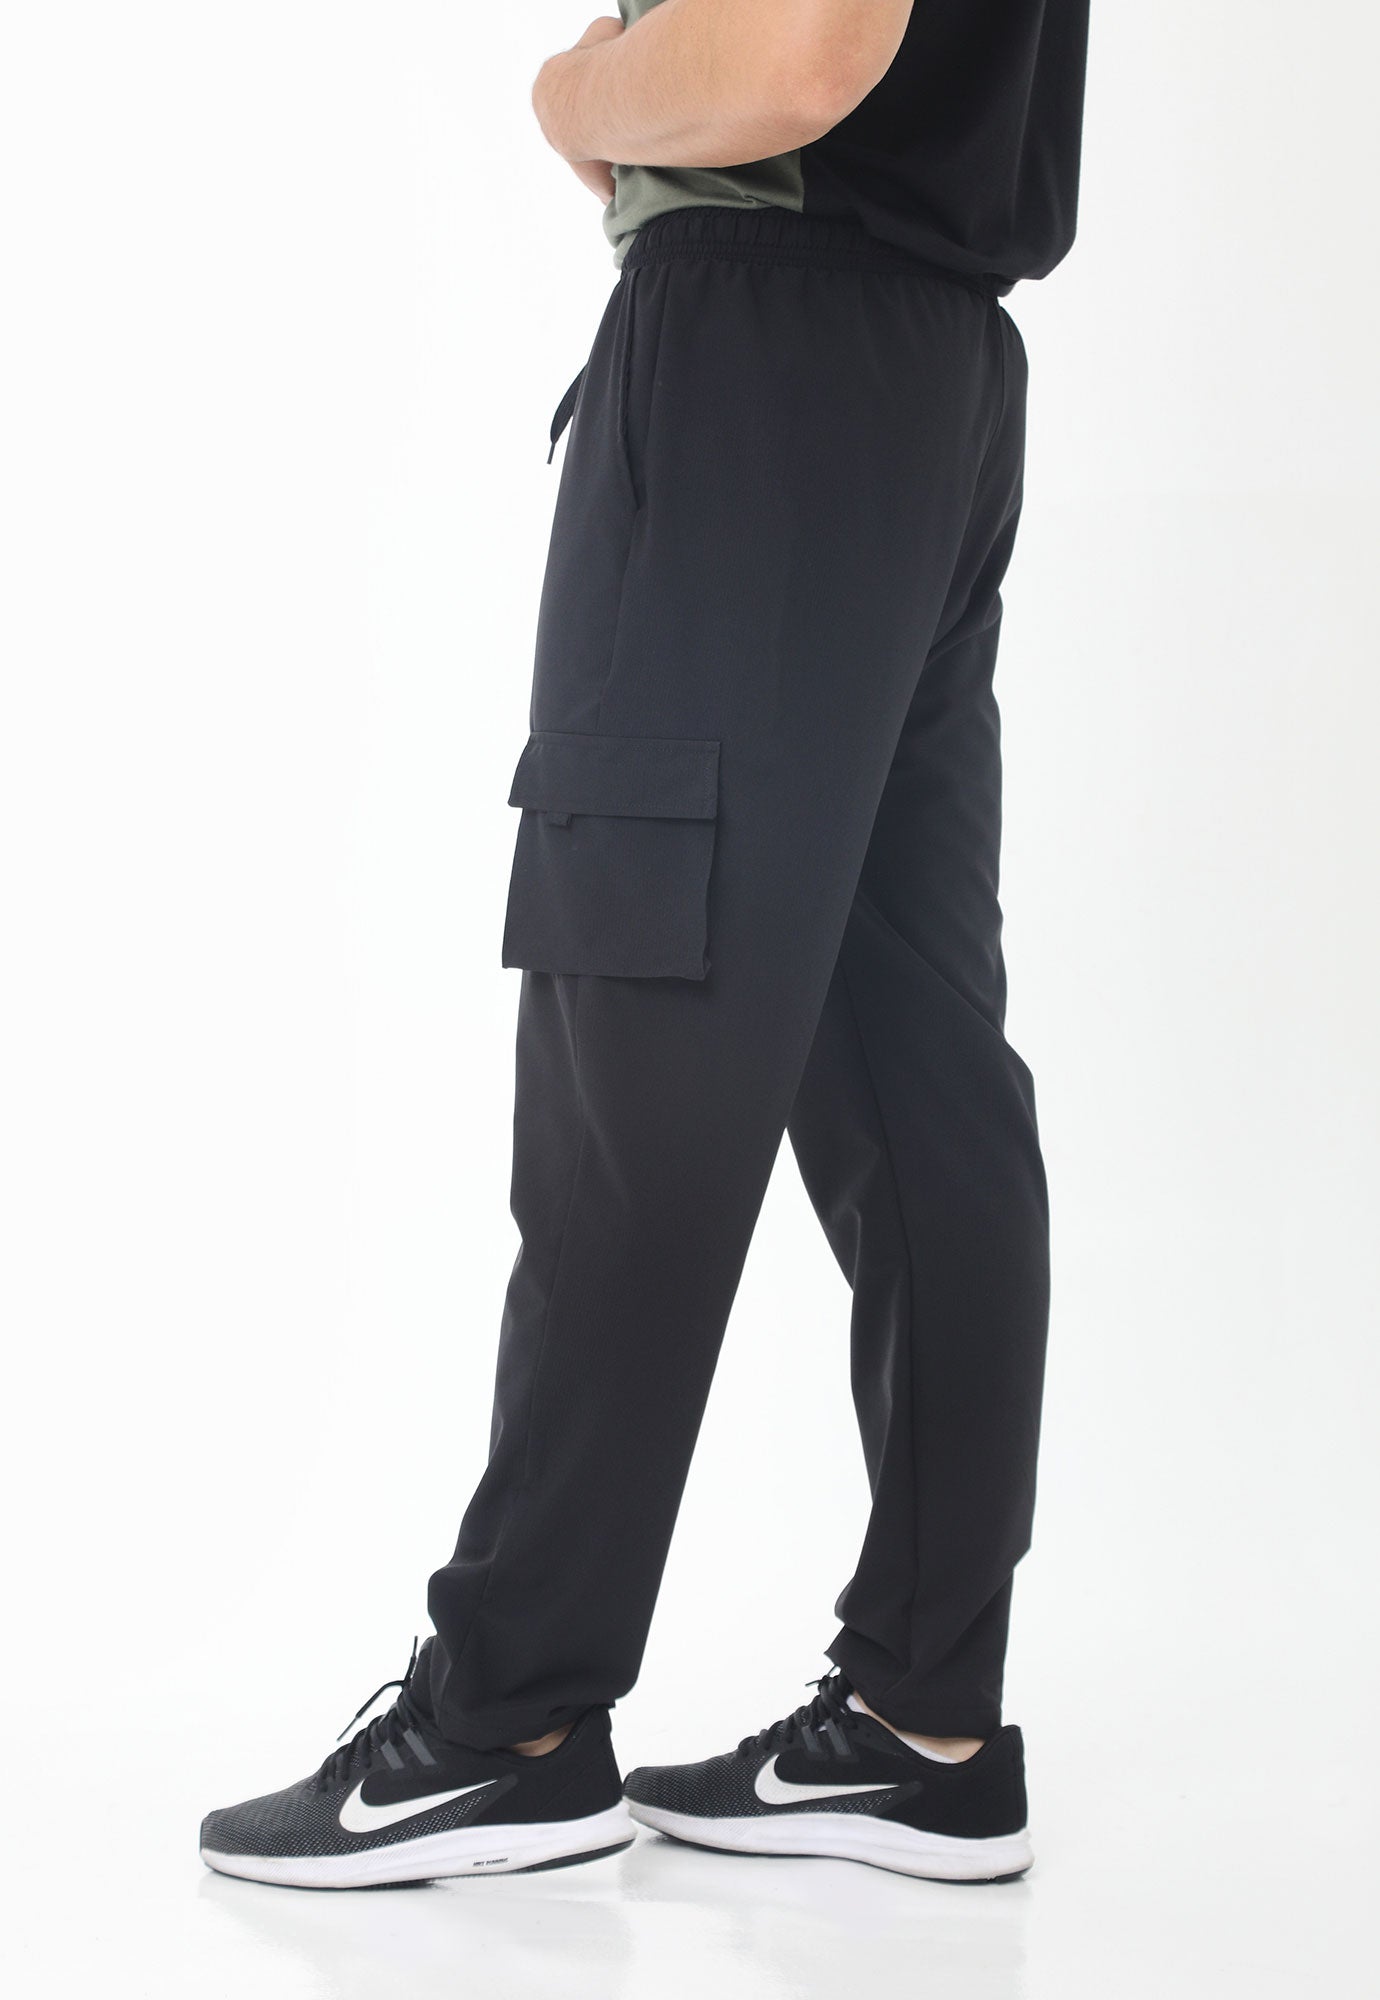 Pantalón negro con bolsillos frontales diagonales para hombre